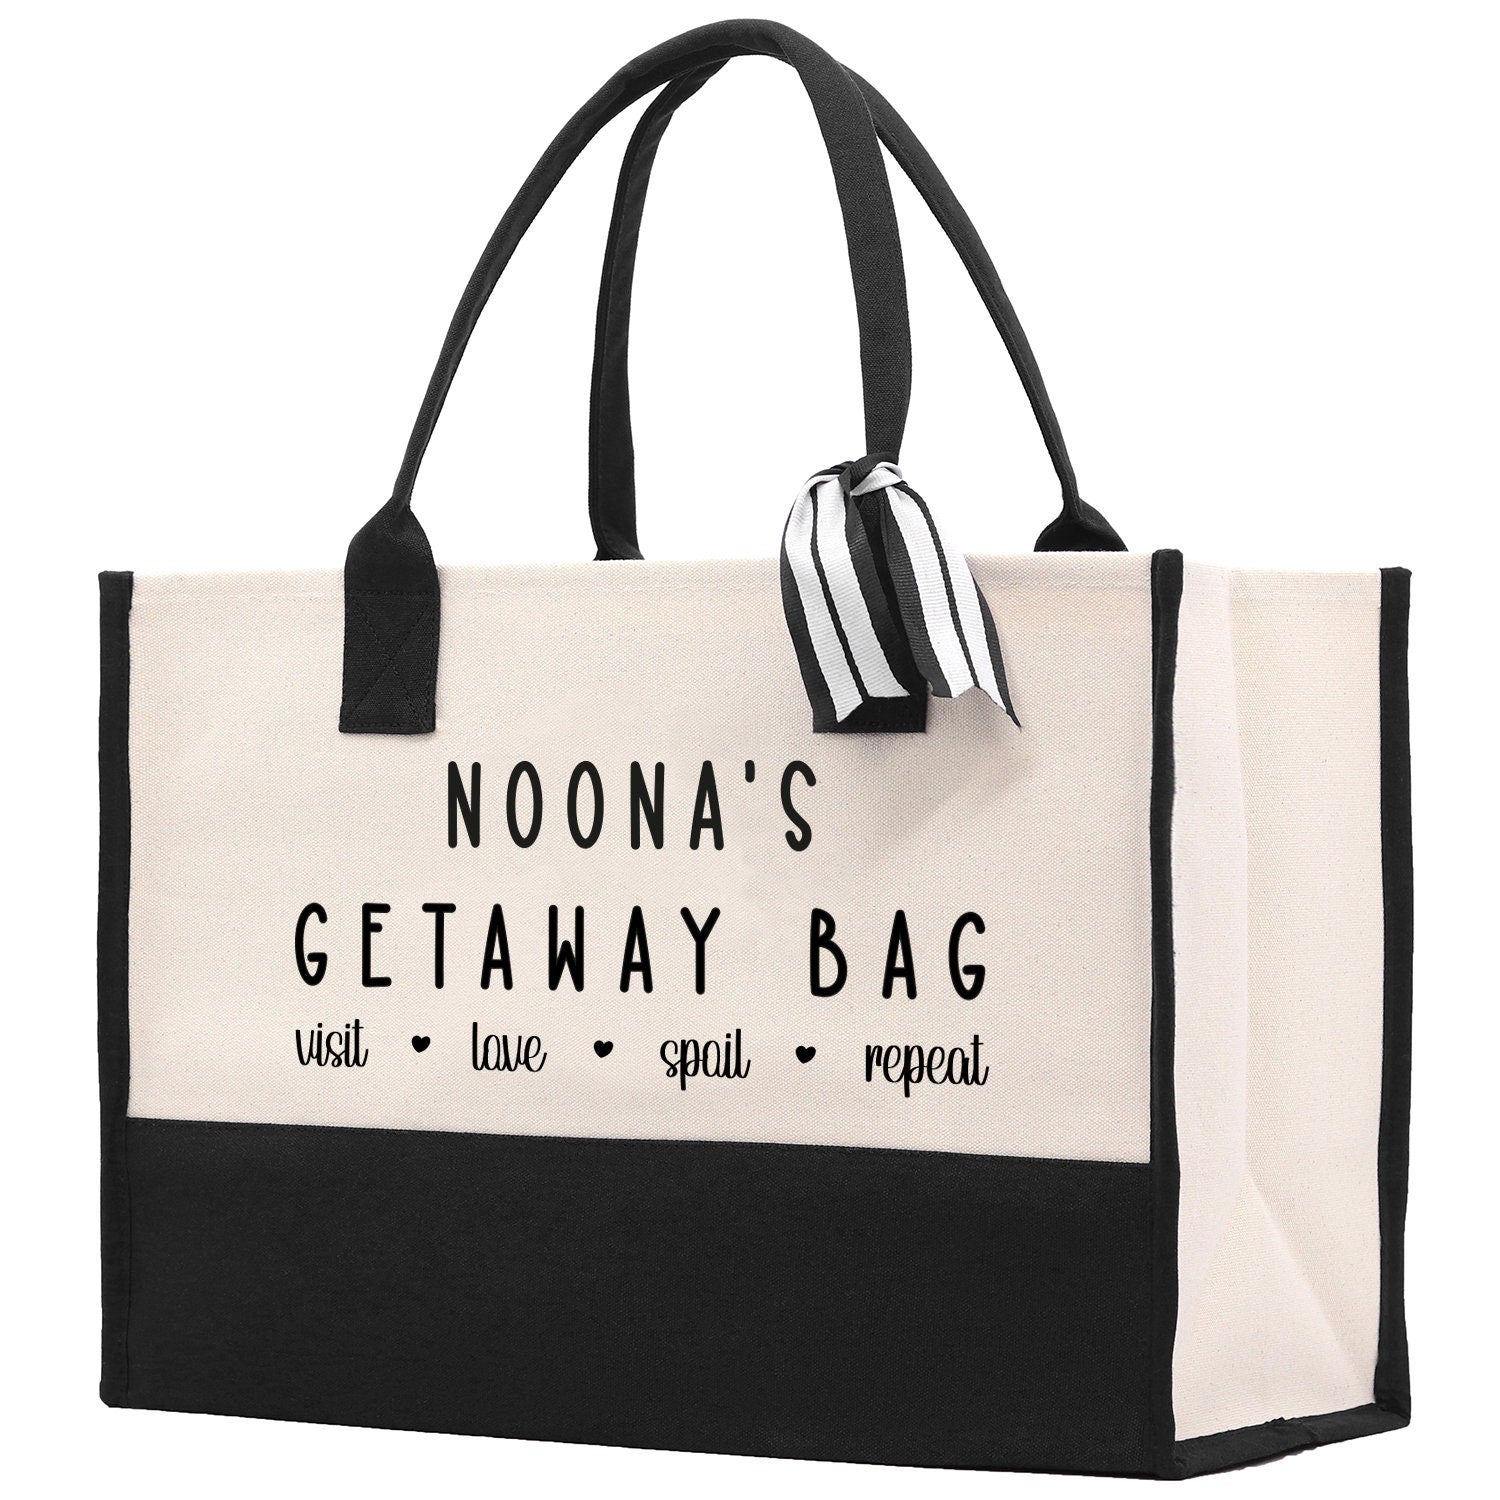 Grandma Tote Bag Grandma's Getaway Bag Grandma Nana Bag Grandma Gift Bag Shopping Bag Mothers Day Gift Live Love Spoil Bag Grandma GM1018